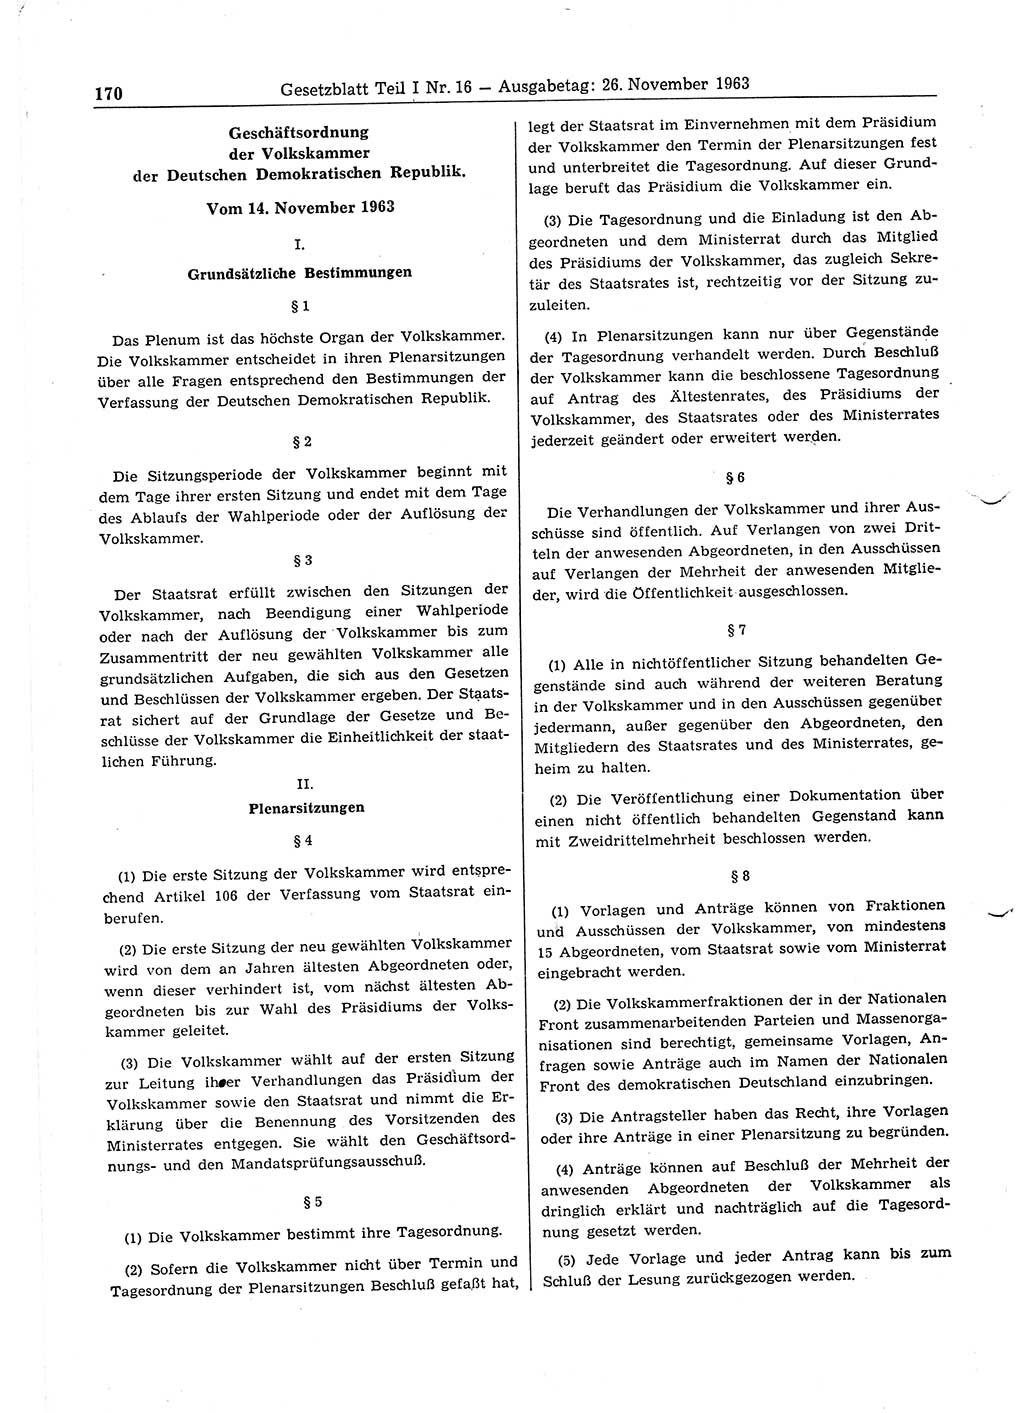 Gesetzblatt (GBl.) der Deutschen Demokratischen Republik (DDR) Teil Ⅰ 1963, Seite 170 (GBl. DDR Ⅰ 1963, S. 170)